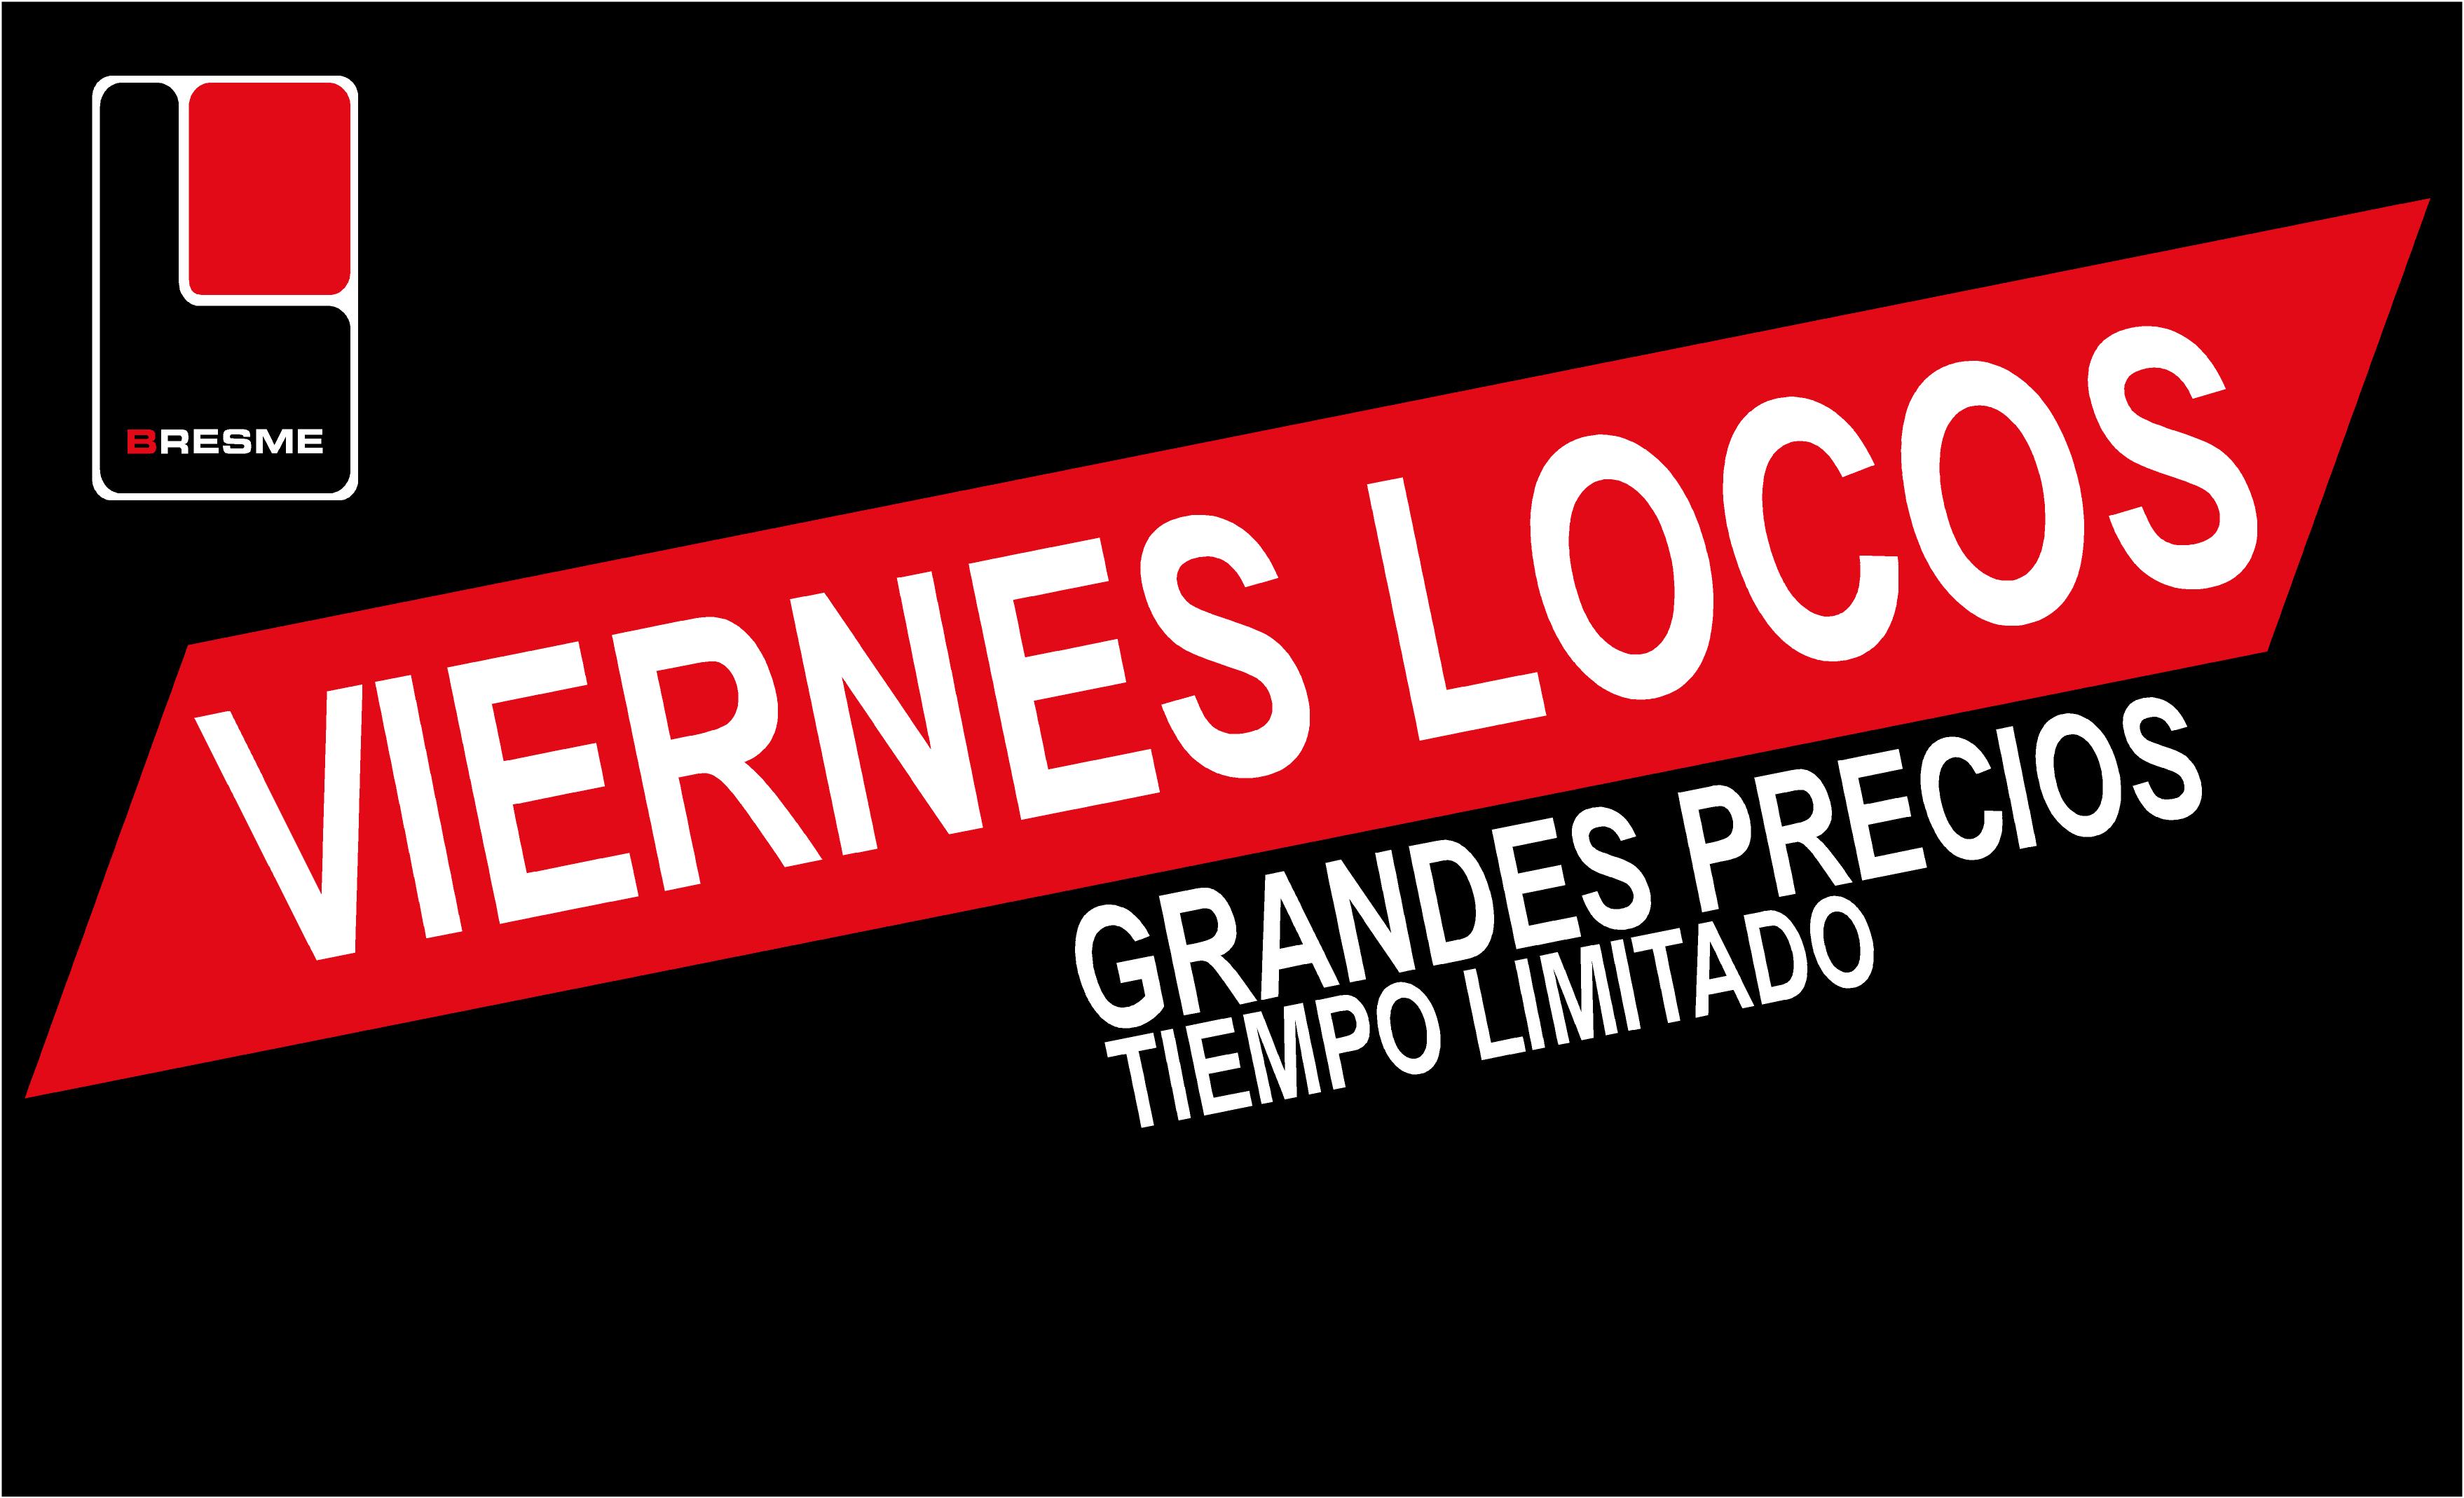 Viernes locos  - general